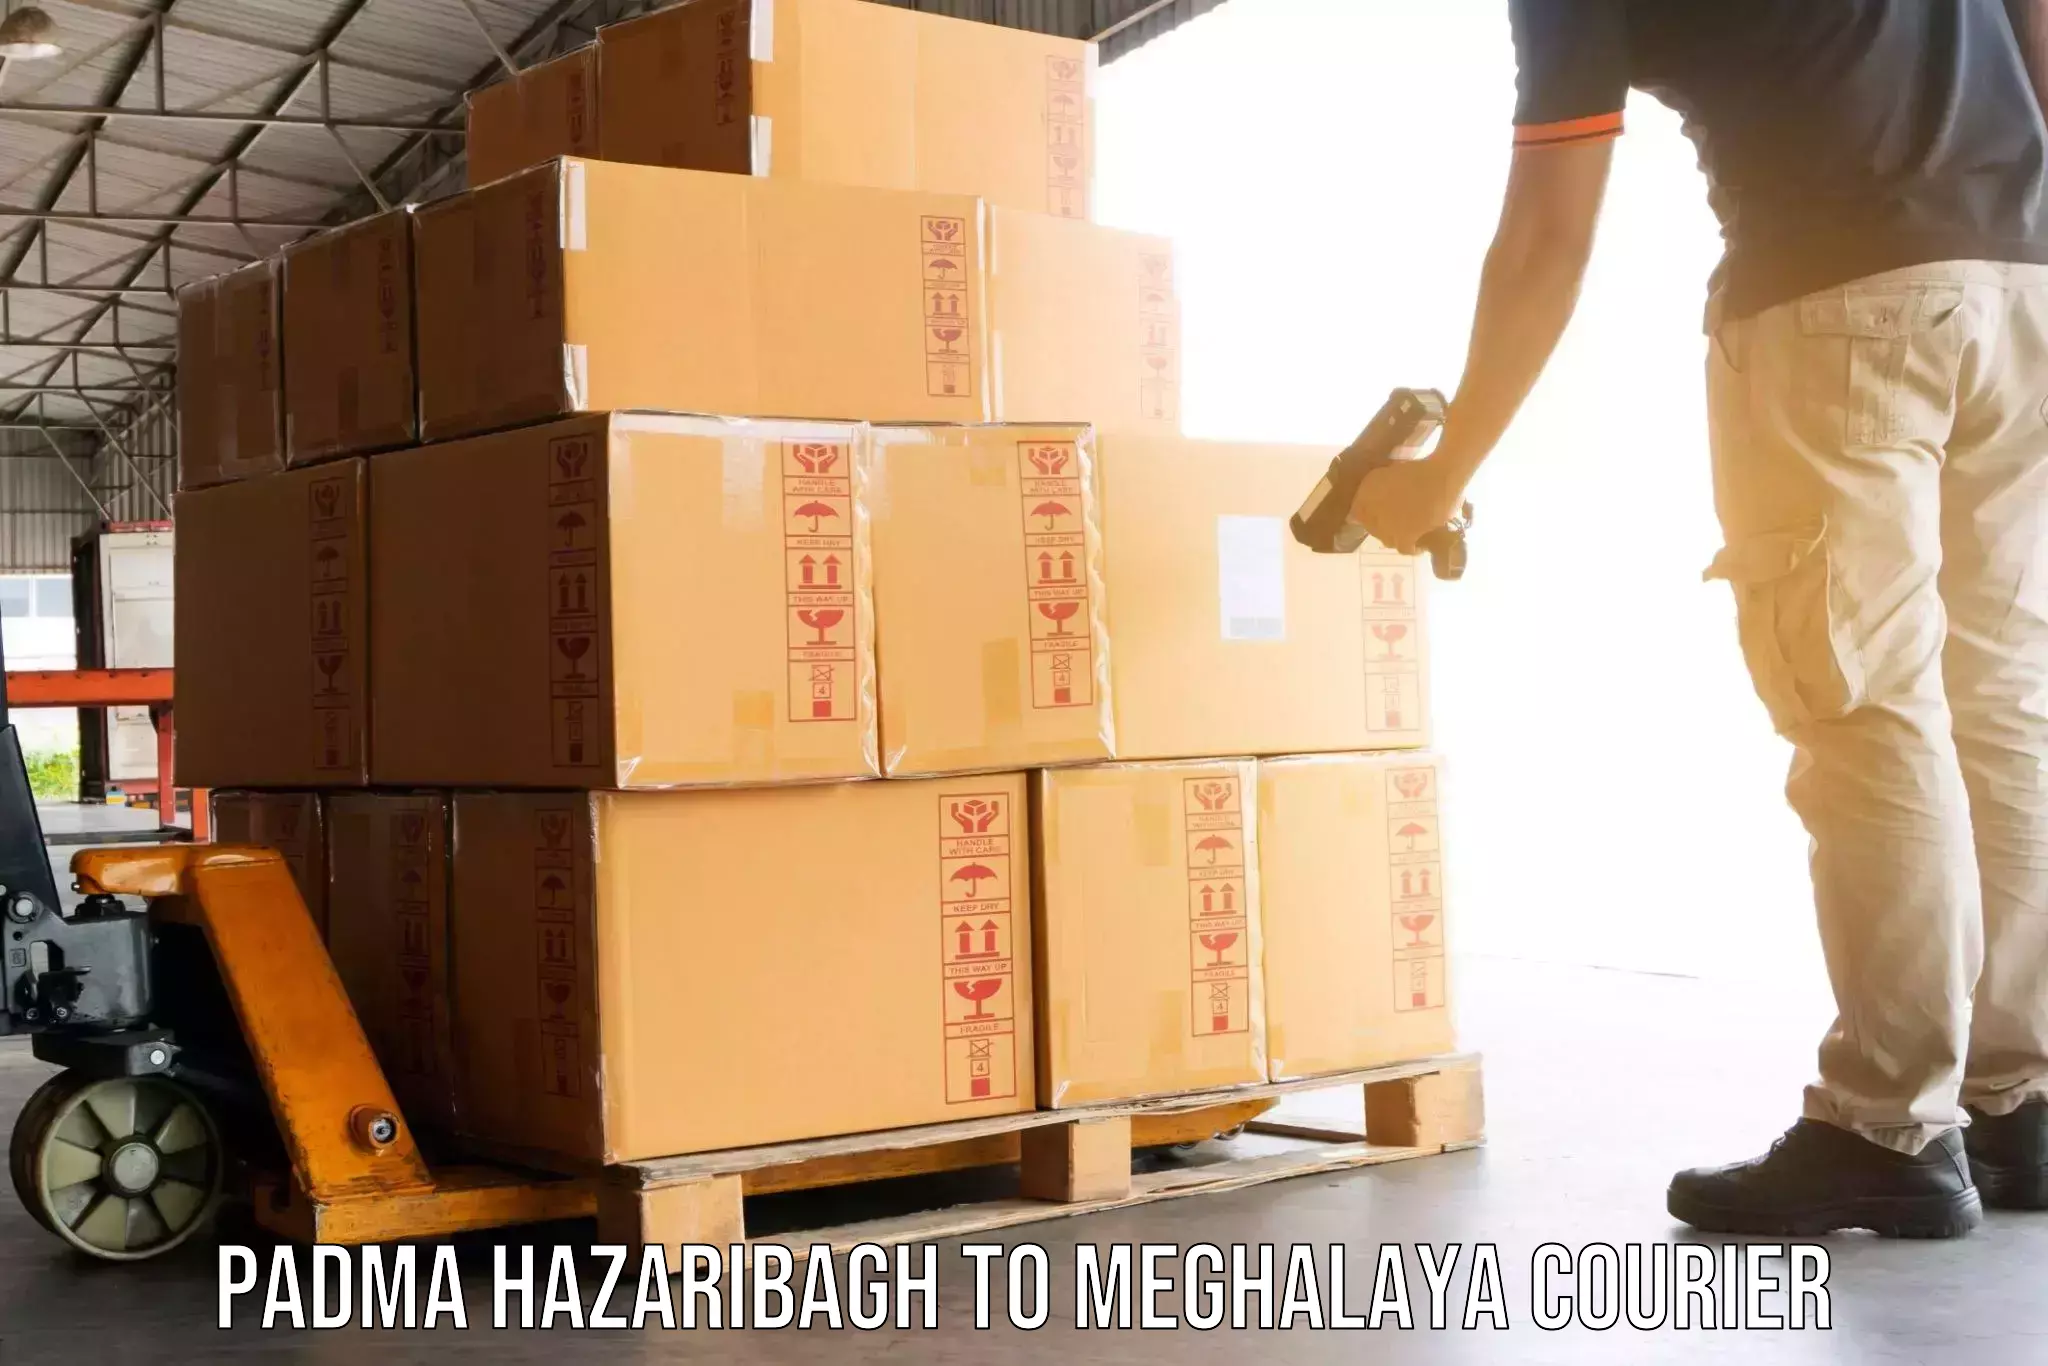 Furniture moving experts Padma Hazaribagh to Meghalaya